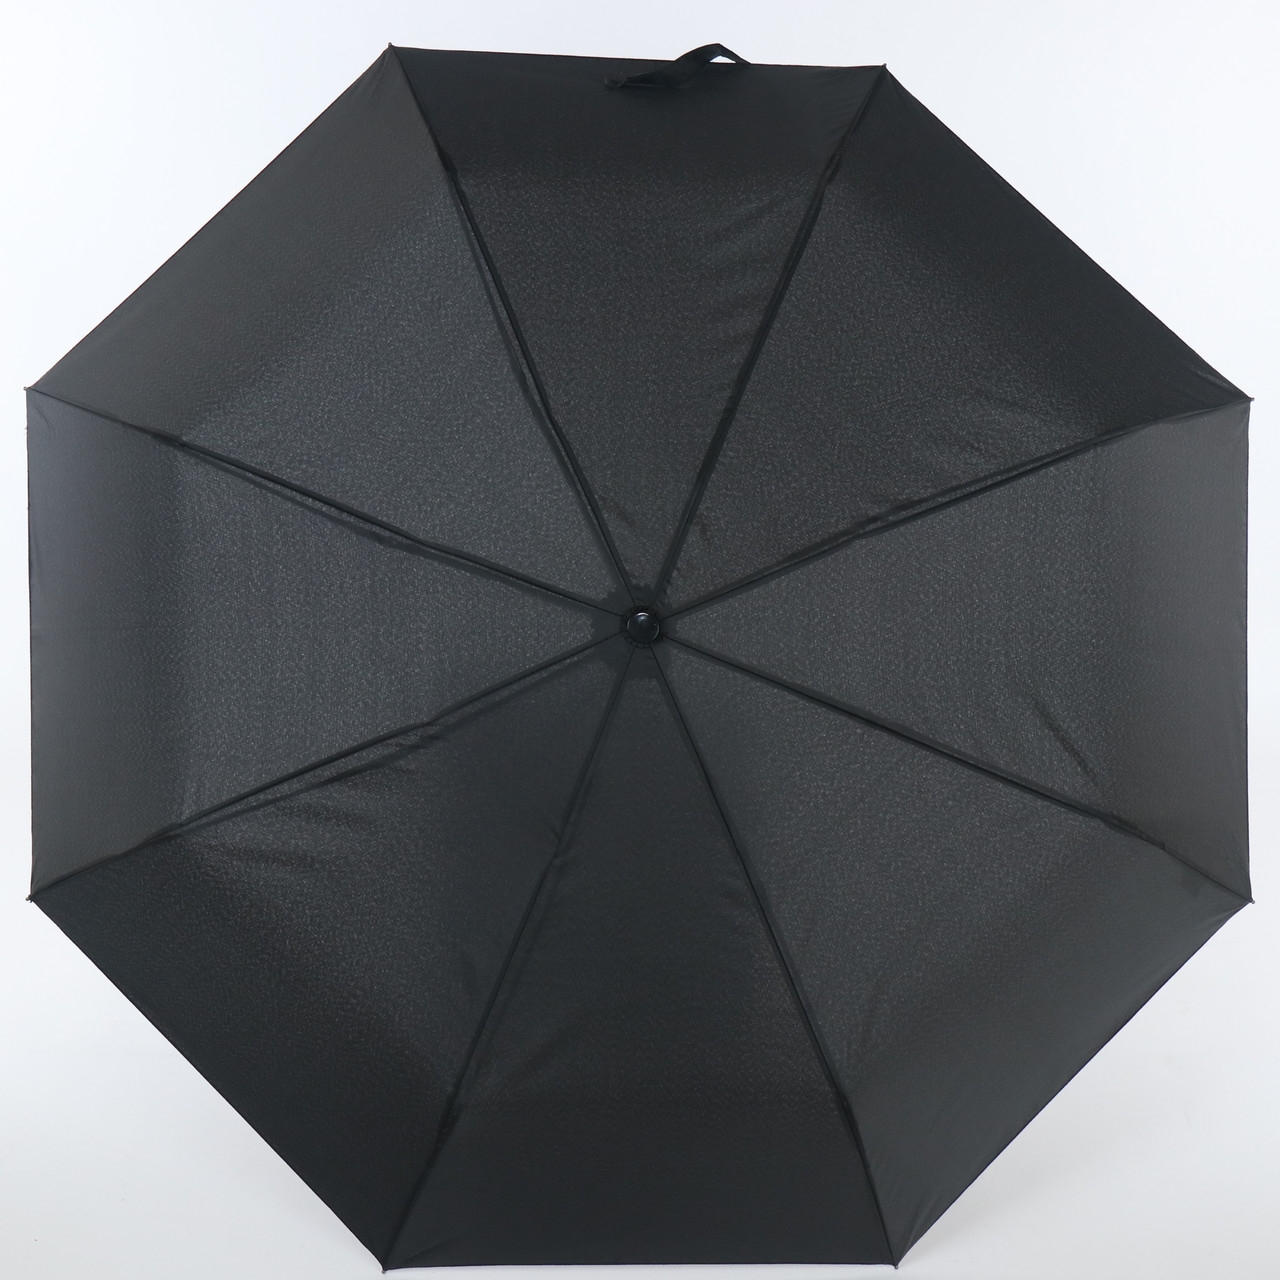 Мужской складной зонтик полный автомат Art Rain 99 см черный - фото 1